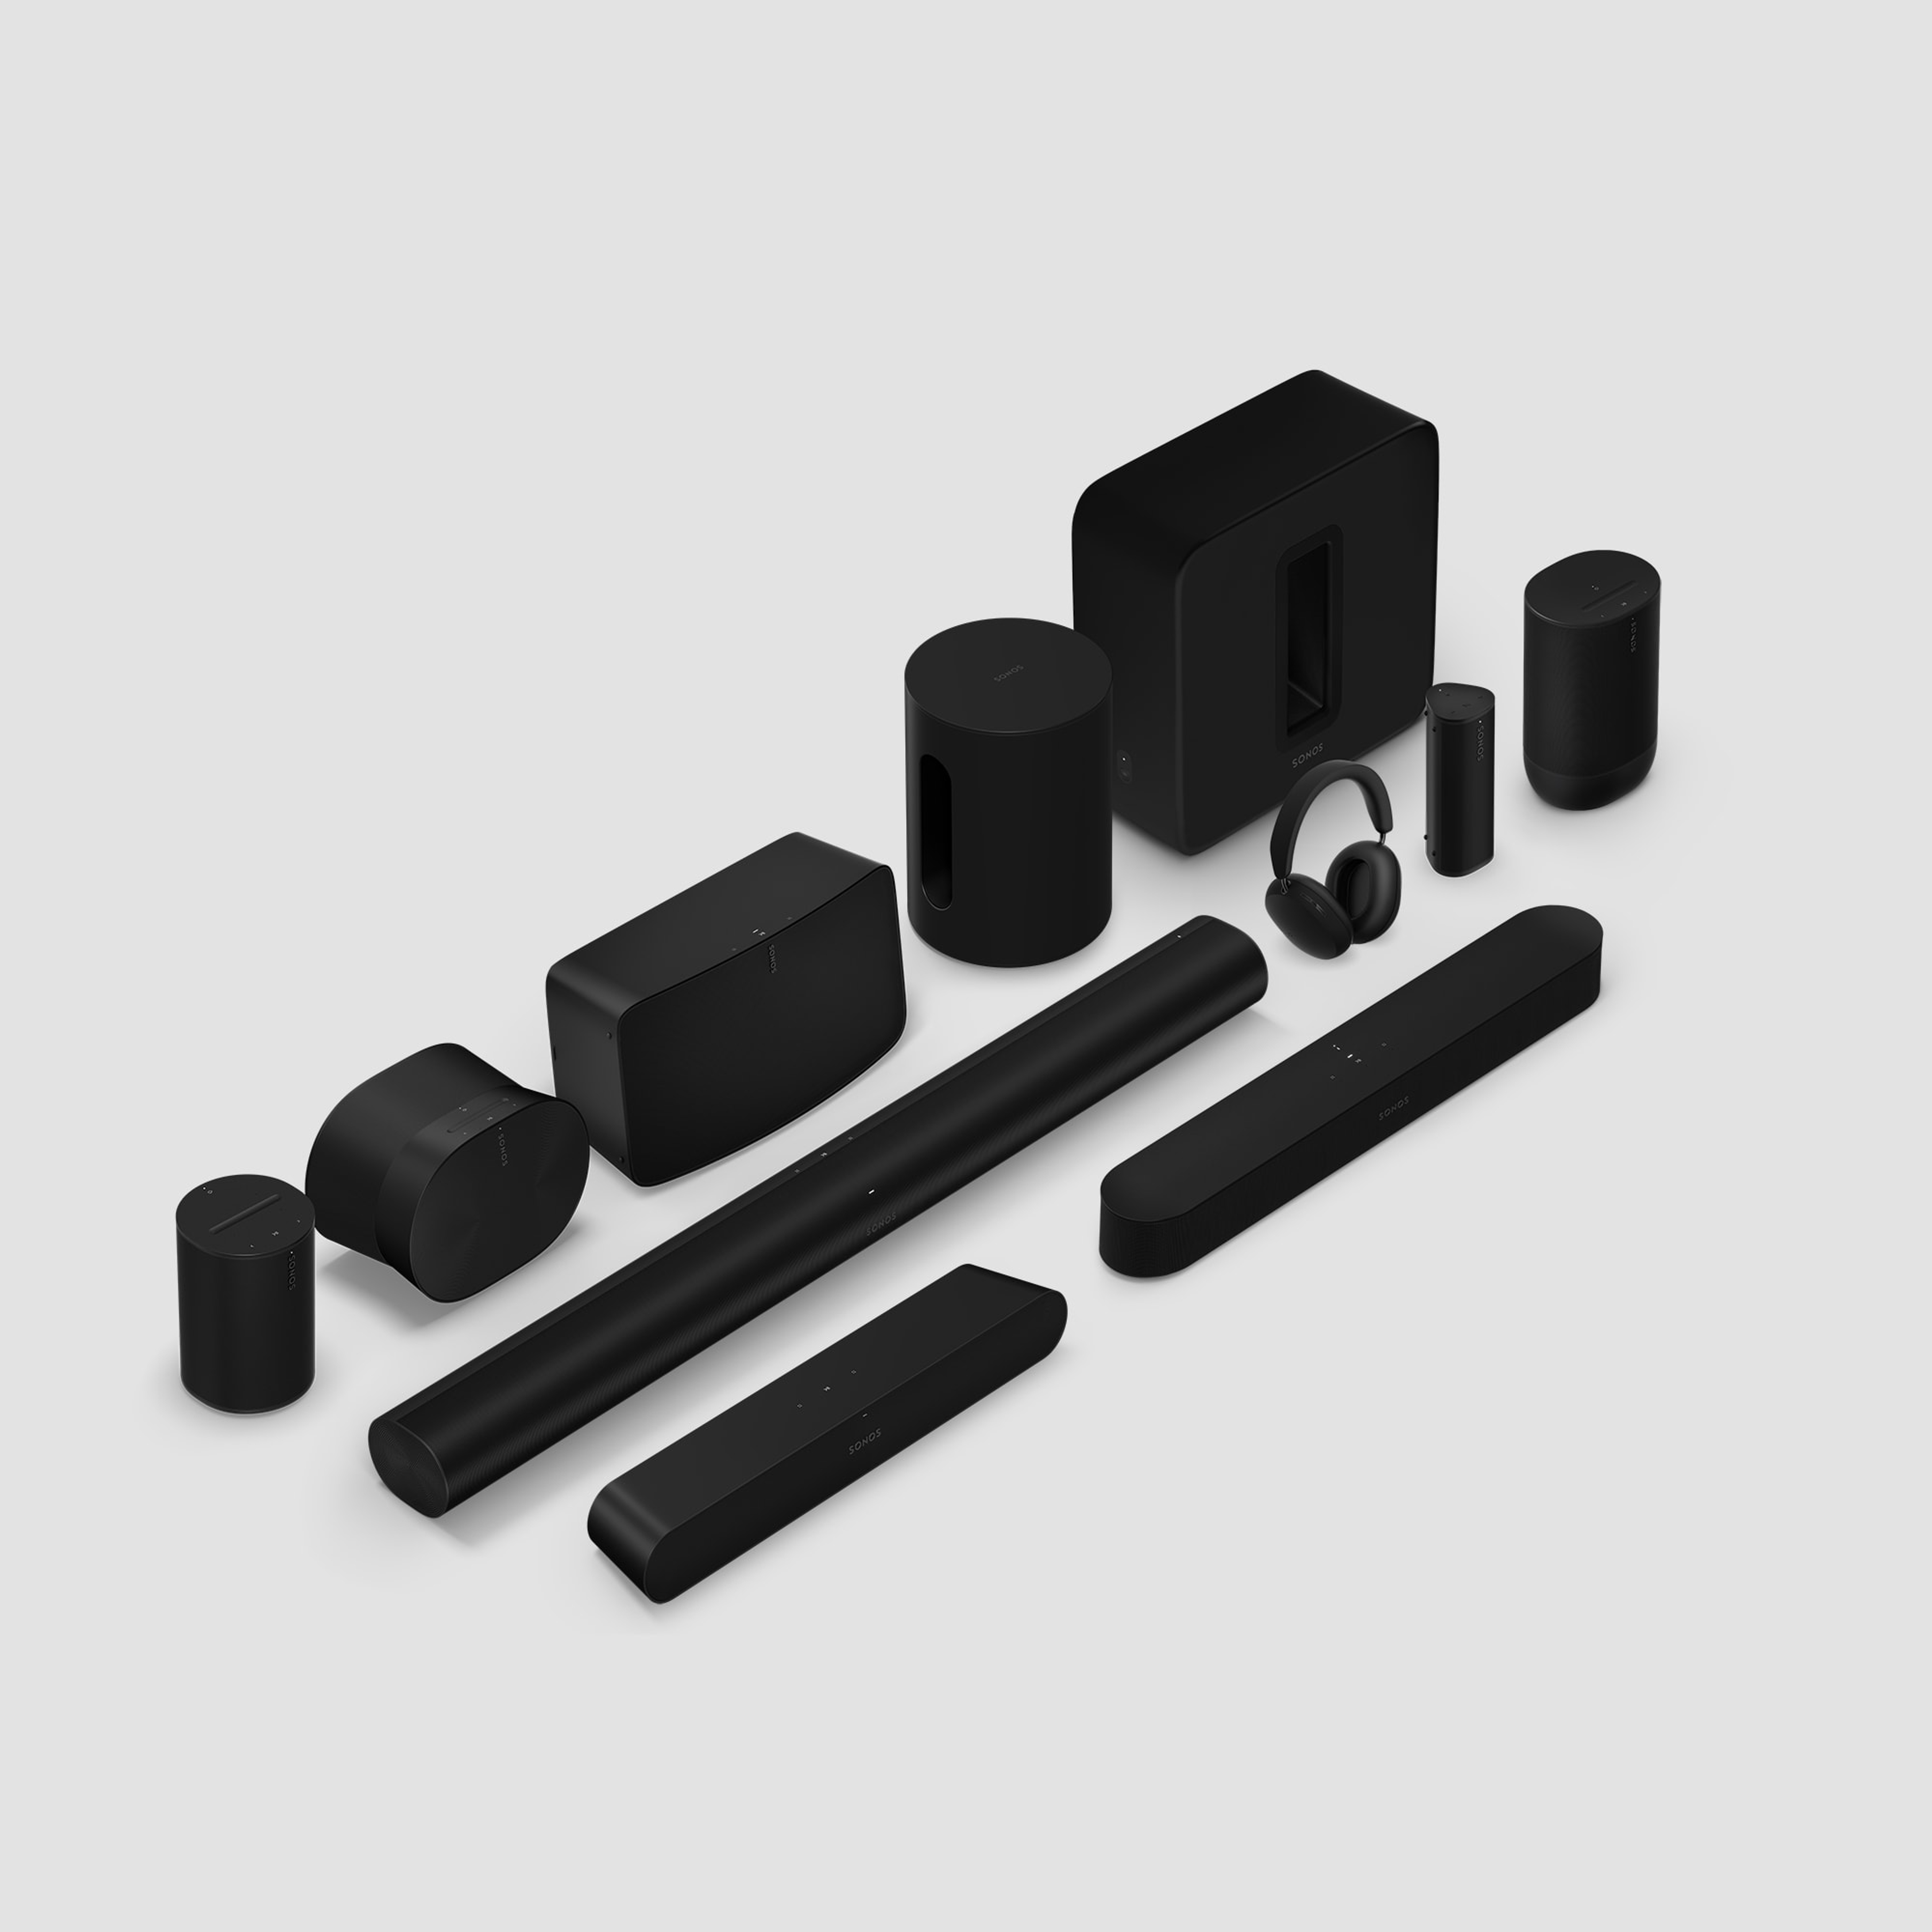 Sonos-productassortiment in zwart